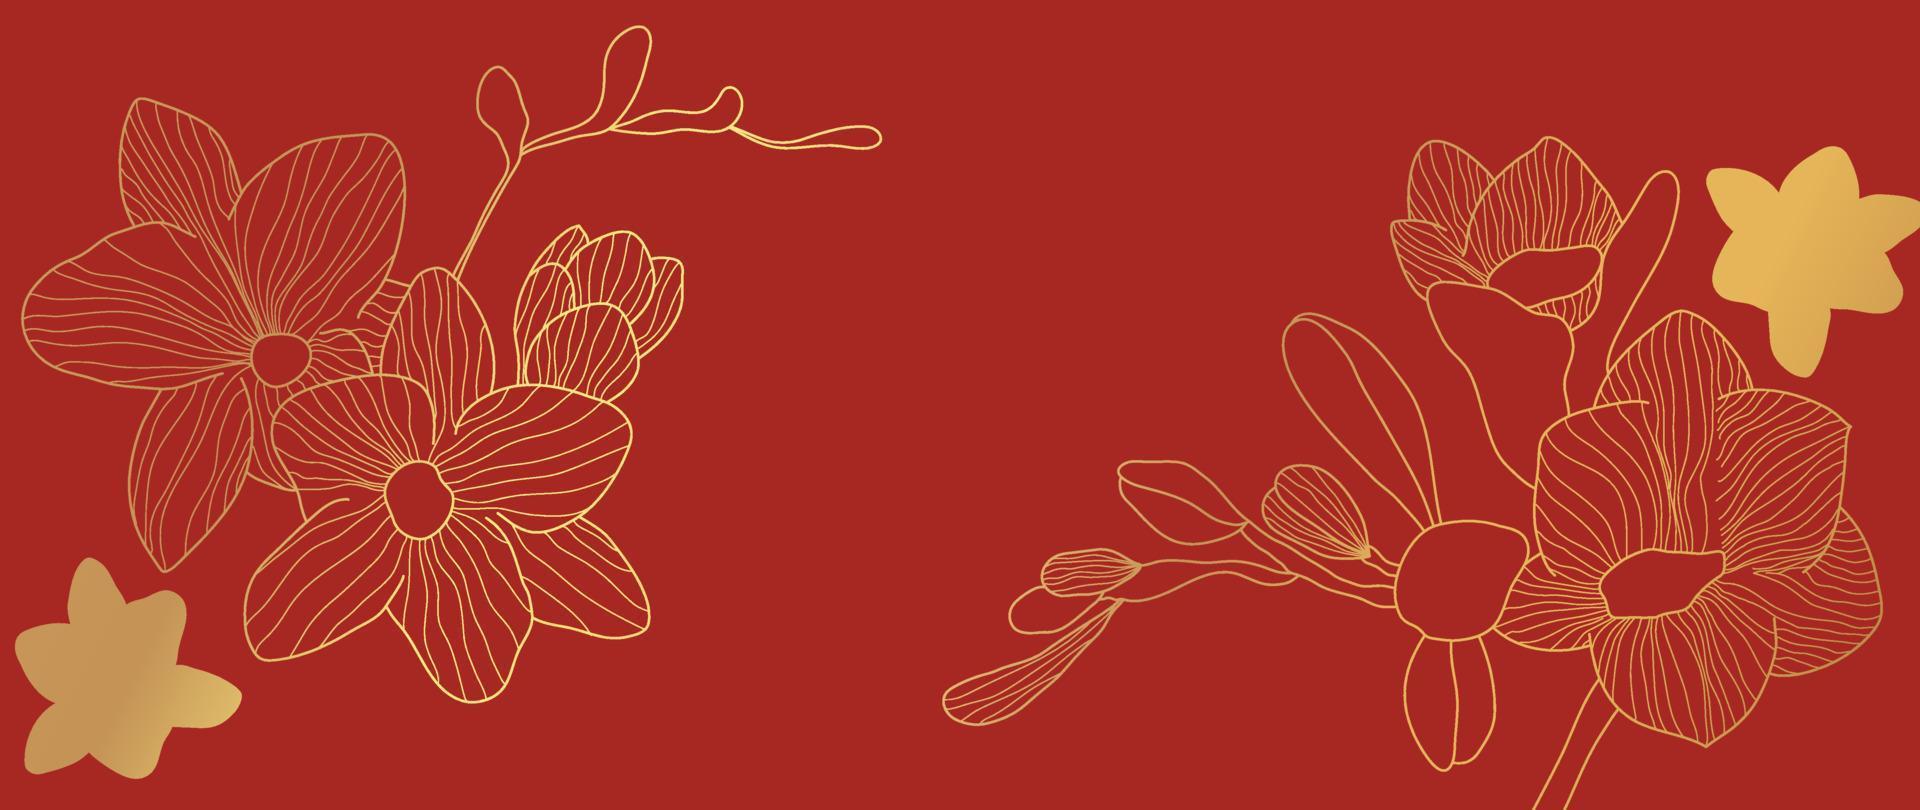 vecteur de fond de modèle de style de luxe de joyeux nouvel an chinois. orchidée orientale fleur or ligne art texture sur fond rouge. illustration de conception pour papier peint, carte, affiche, emballage, publicité.